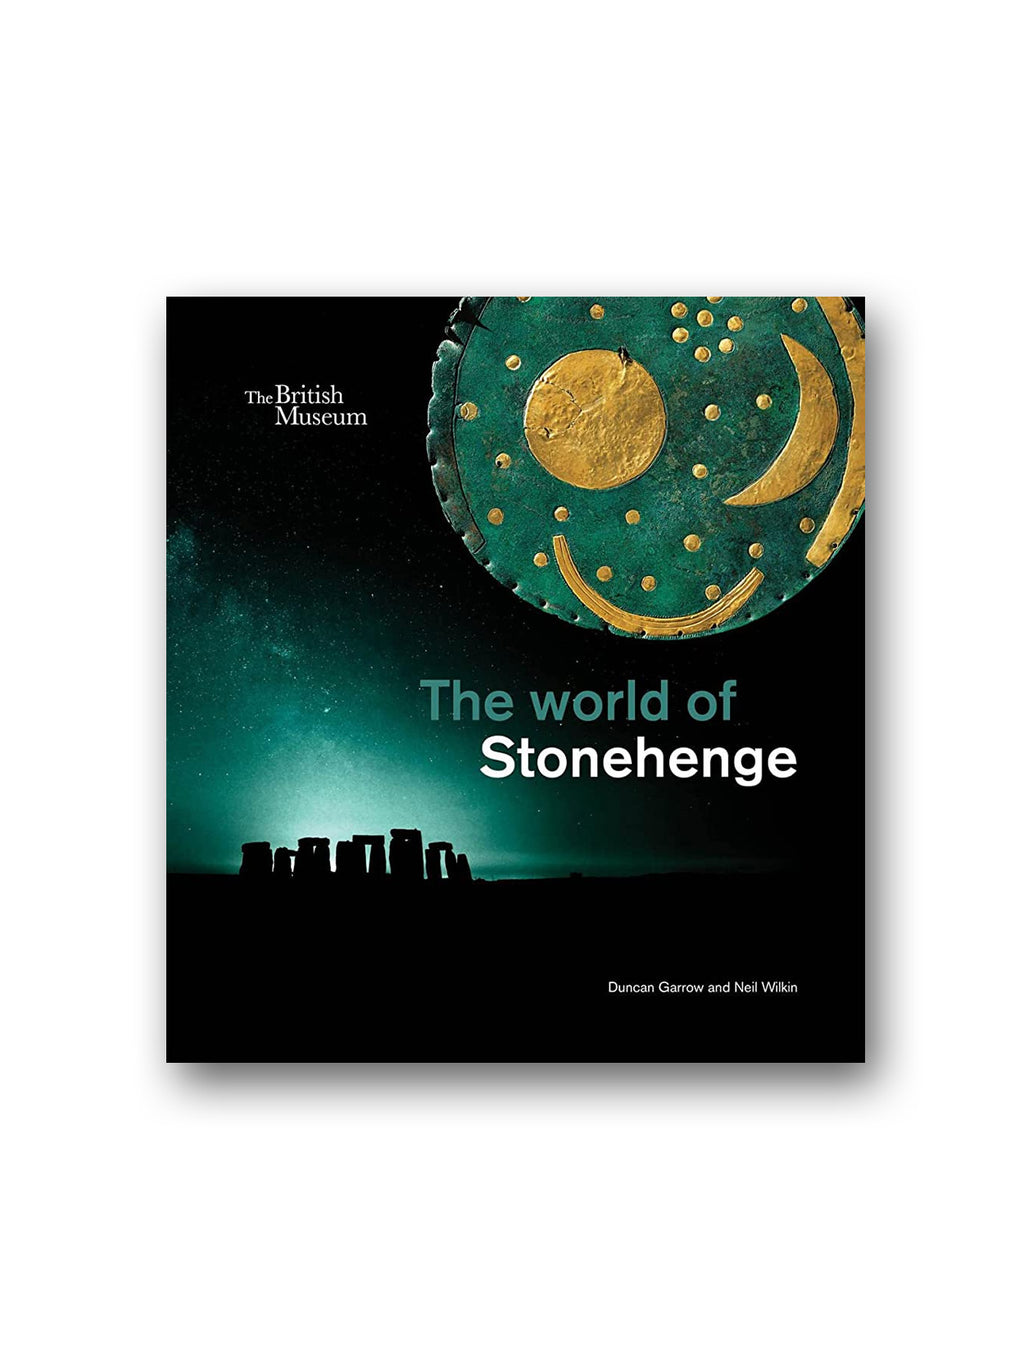 The world of Stonehenge